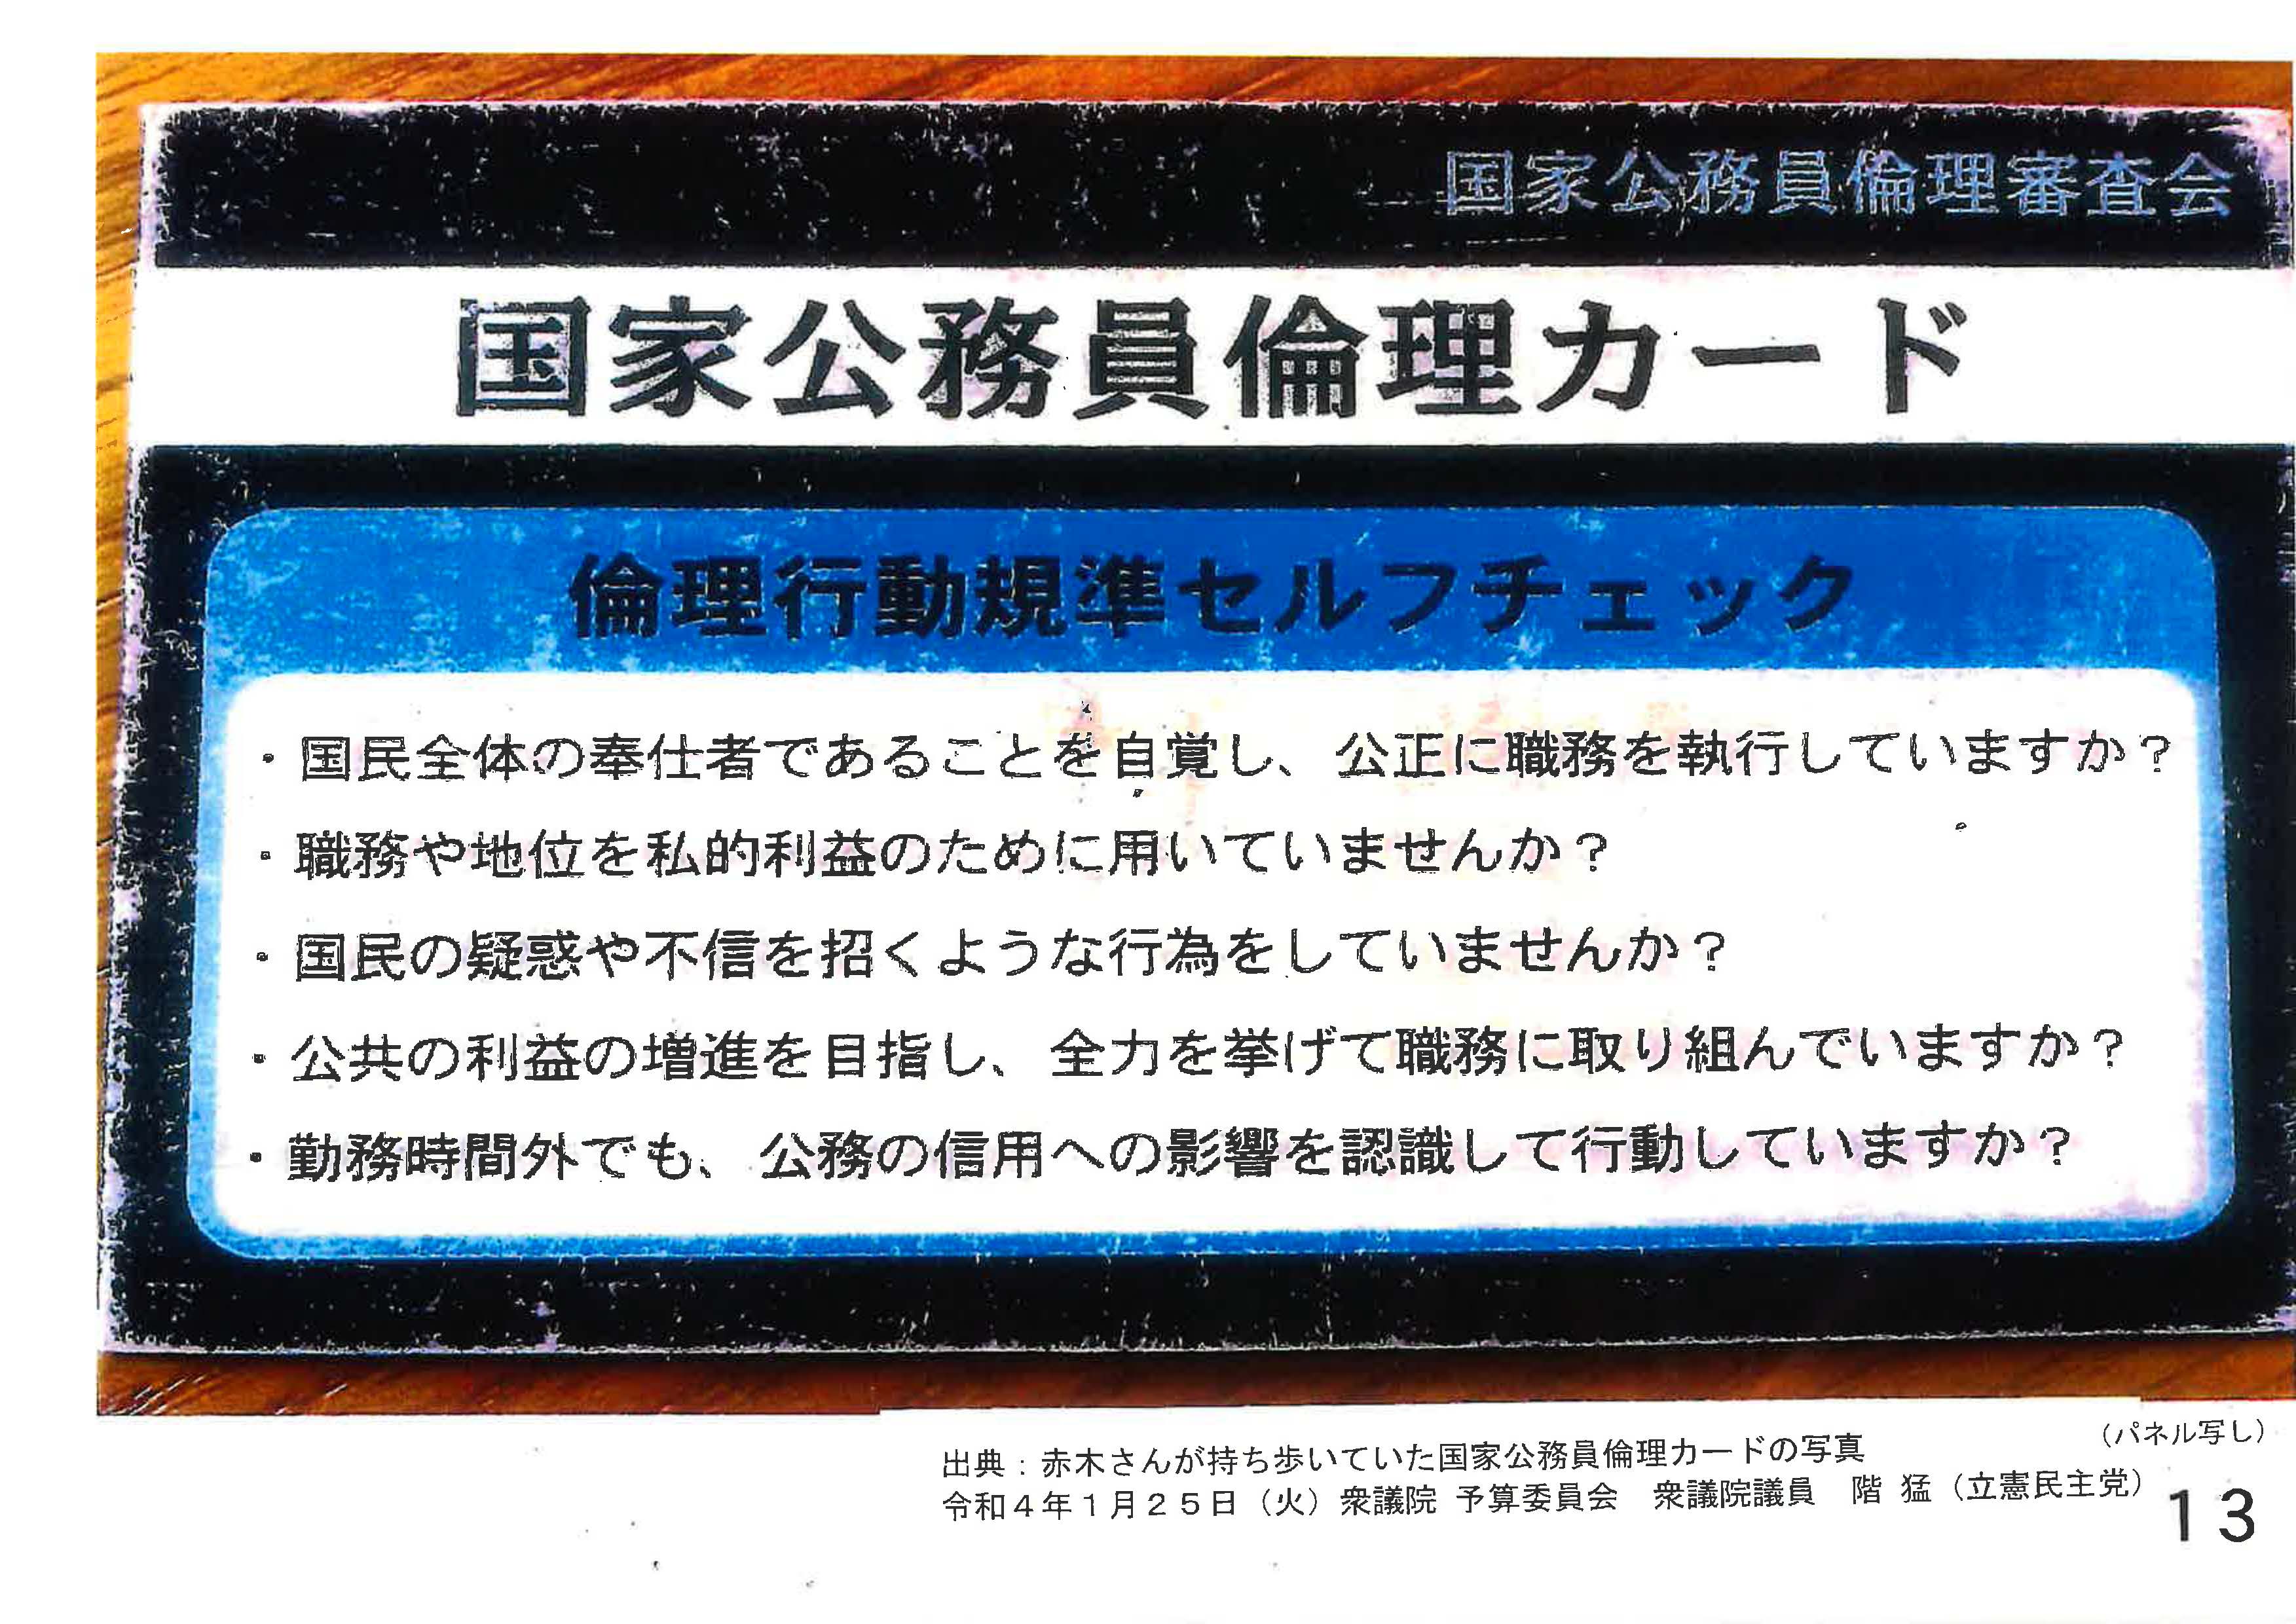 赤木俊夫さんが持っていた「国家公務員倫理カード」.jpg